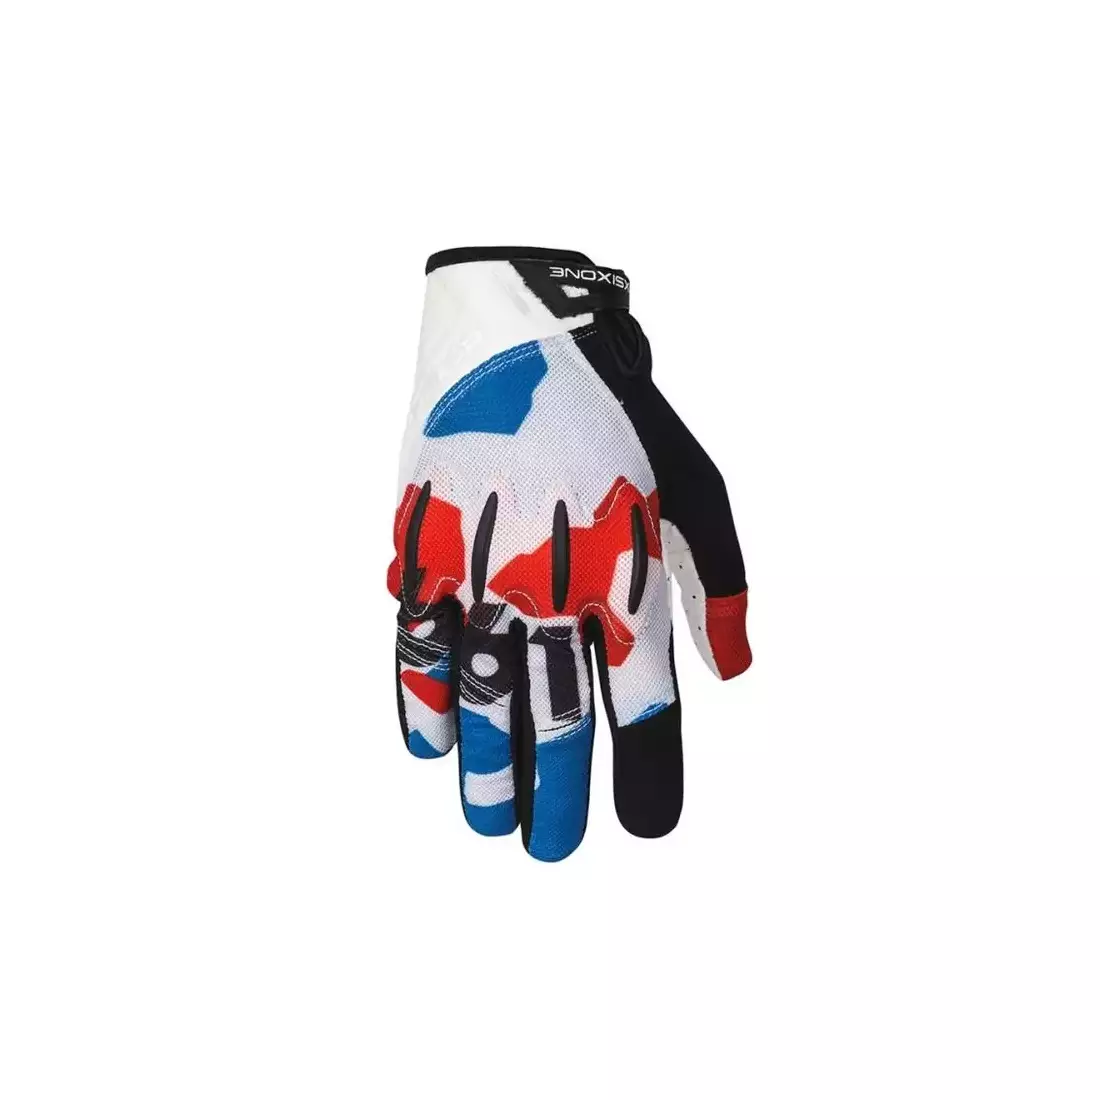 661 EVO II pánské cyklistické rukavice, bílo-červeno-modré